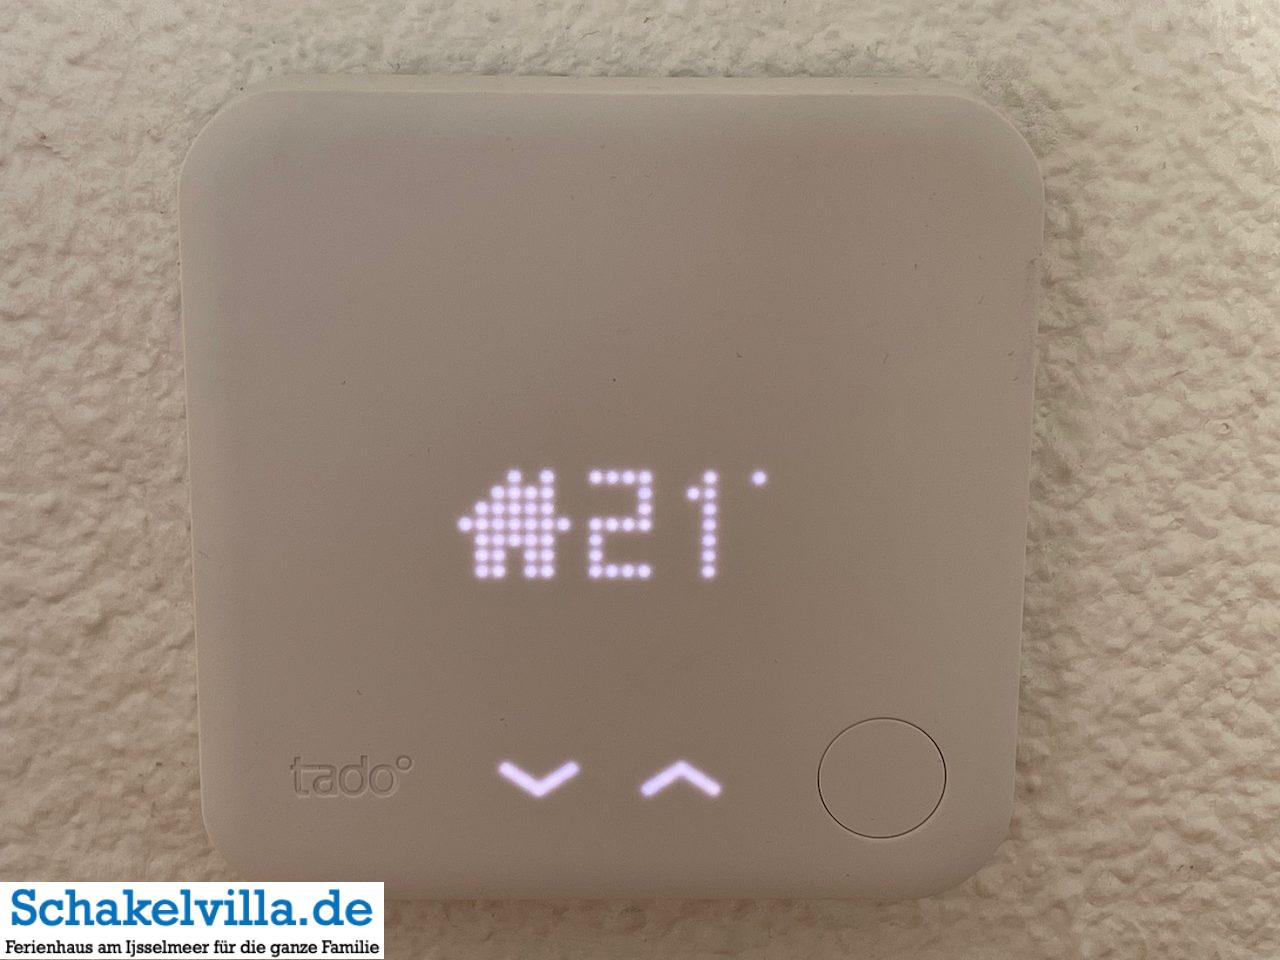 Temperatur im Wohnzimmer einstellen - tado smartes Thermostat - neu in der Schakelvilla Ferienhaus mit Sauna in Makkum am IJsselmeer